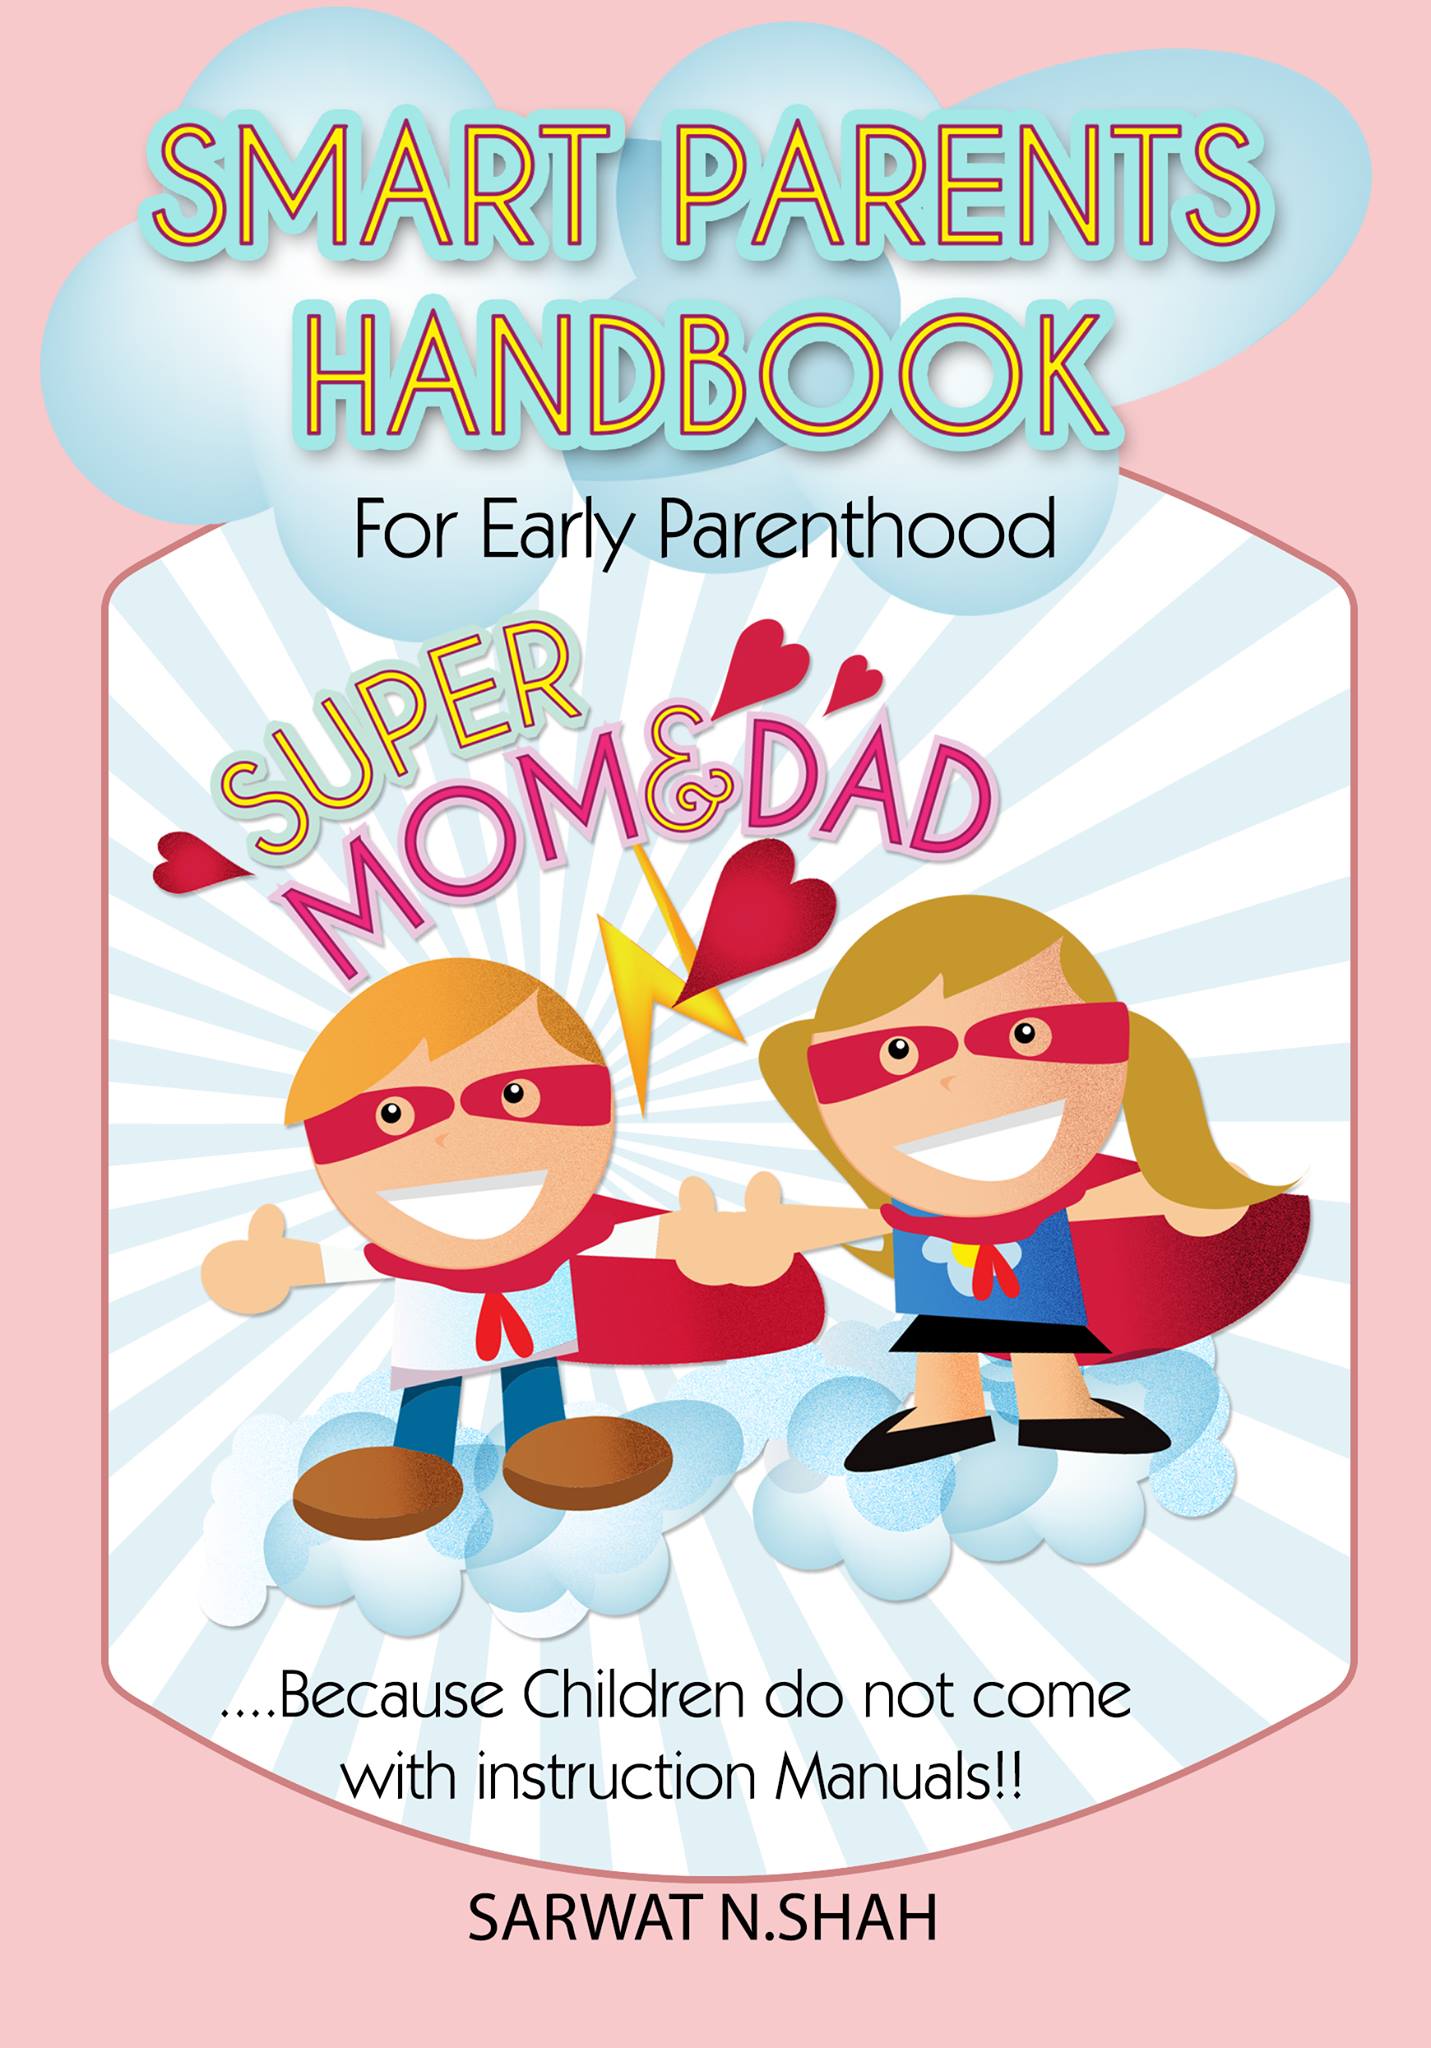 Smart Parents Handbook
